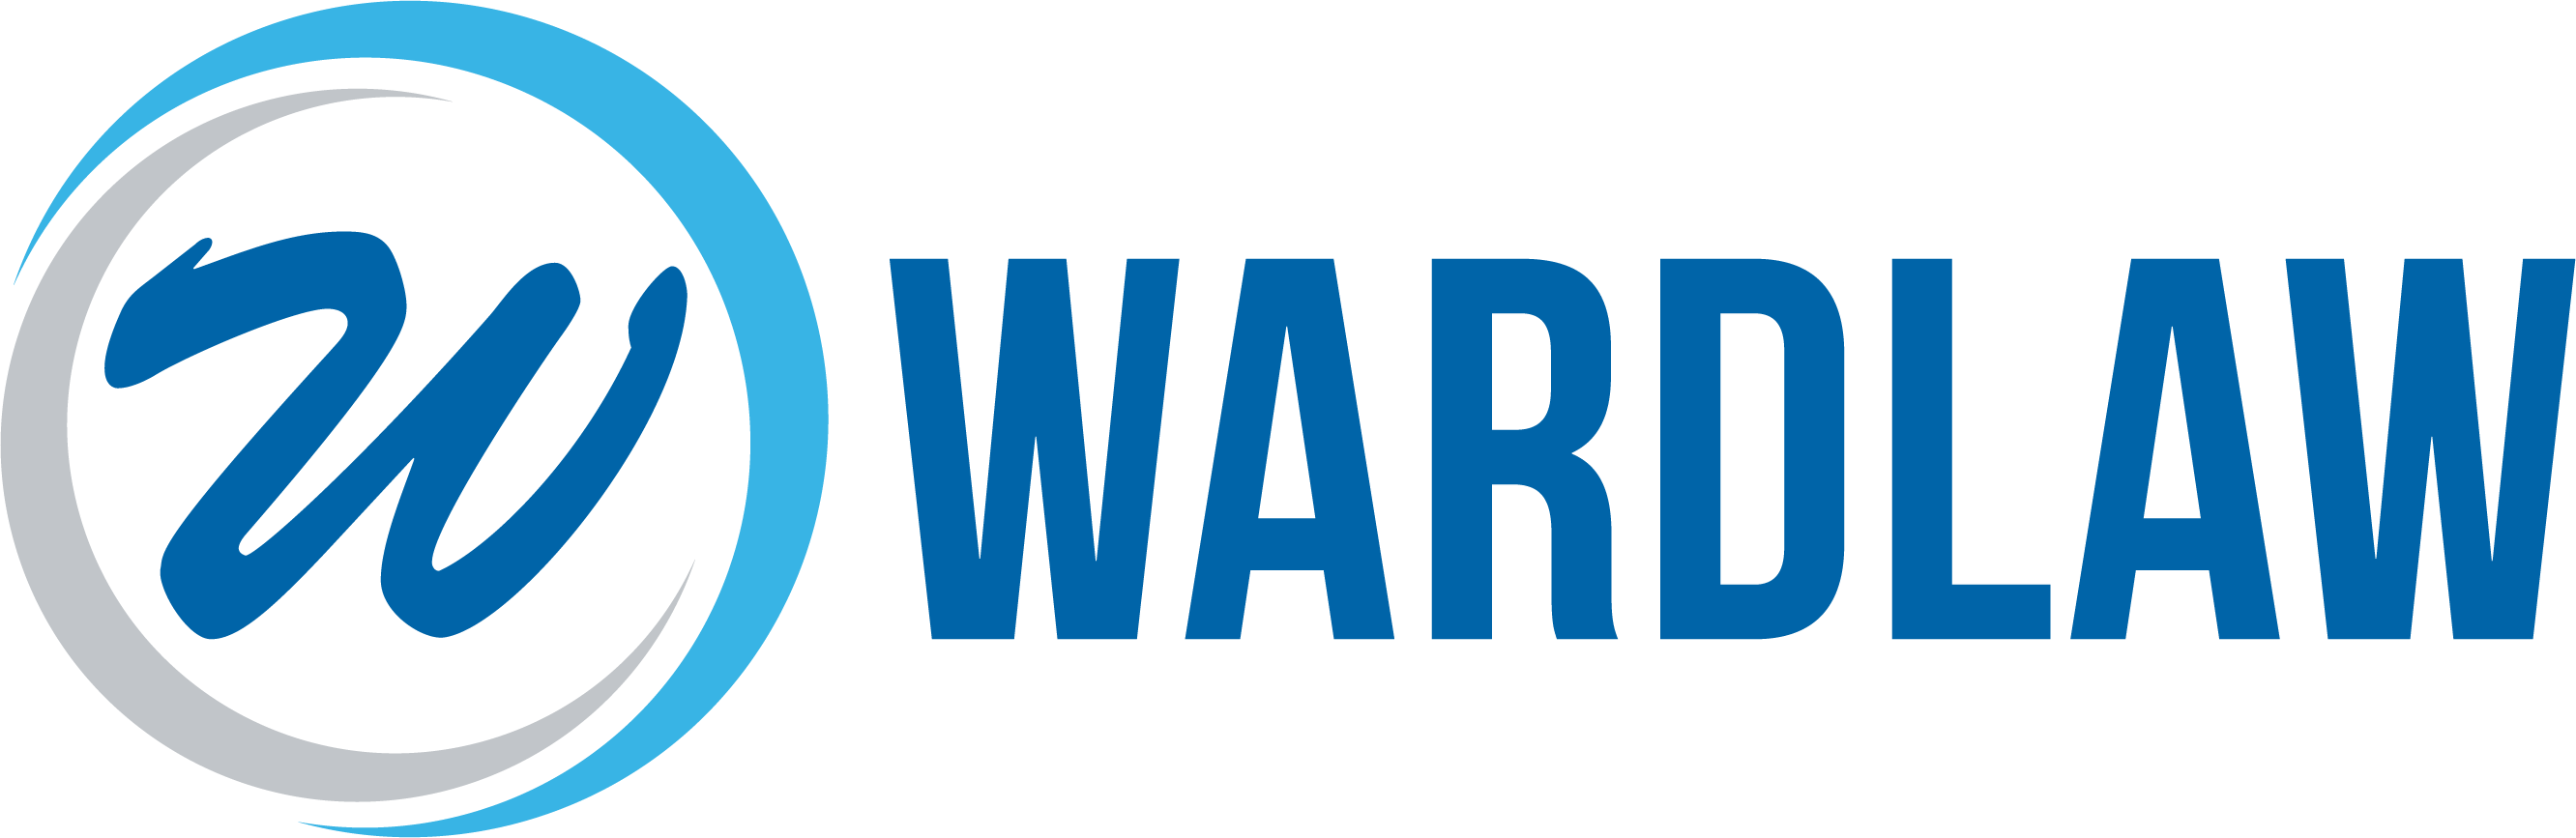 Wardlaw_Nameplates_3c_Horz